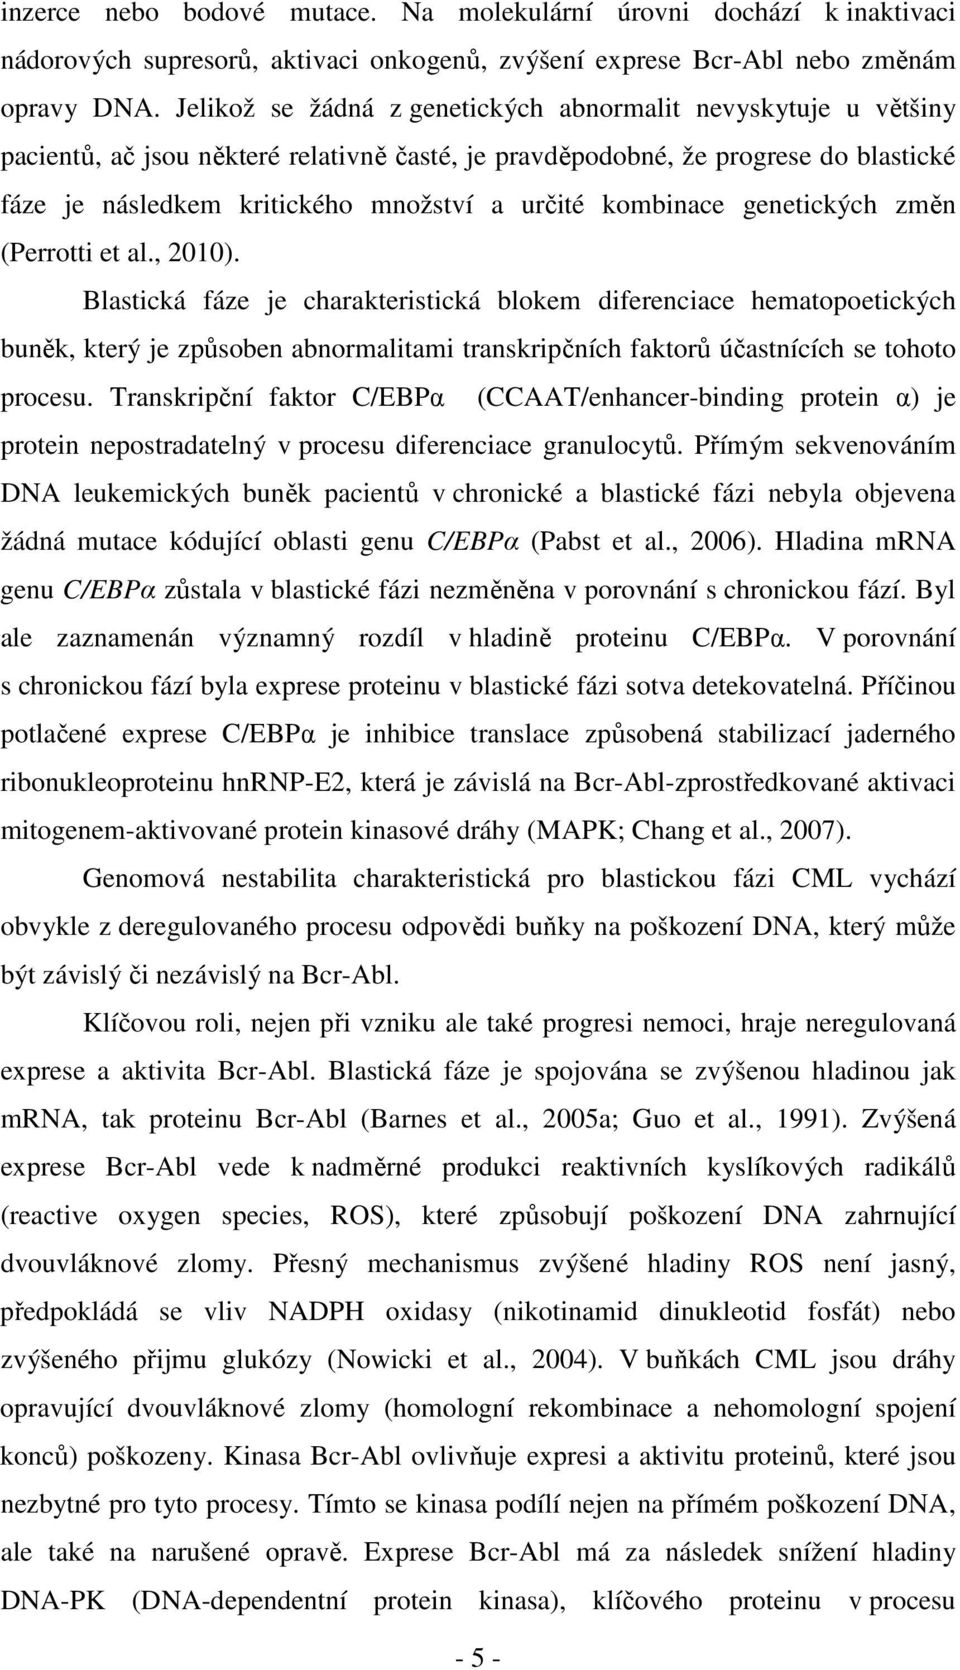 kombinace genetických změn (Perrotti et al., 2010).